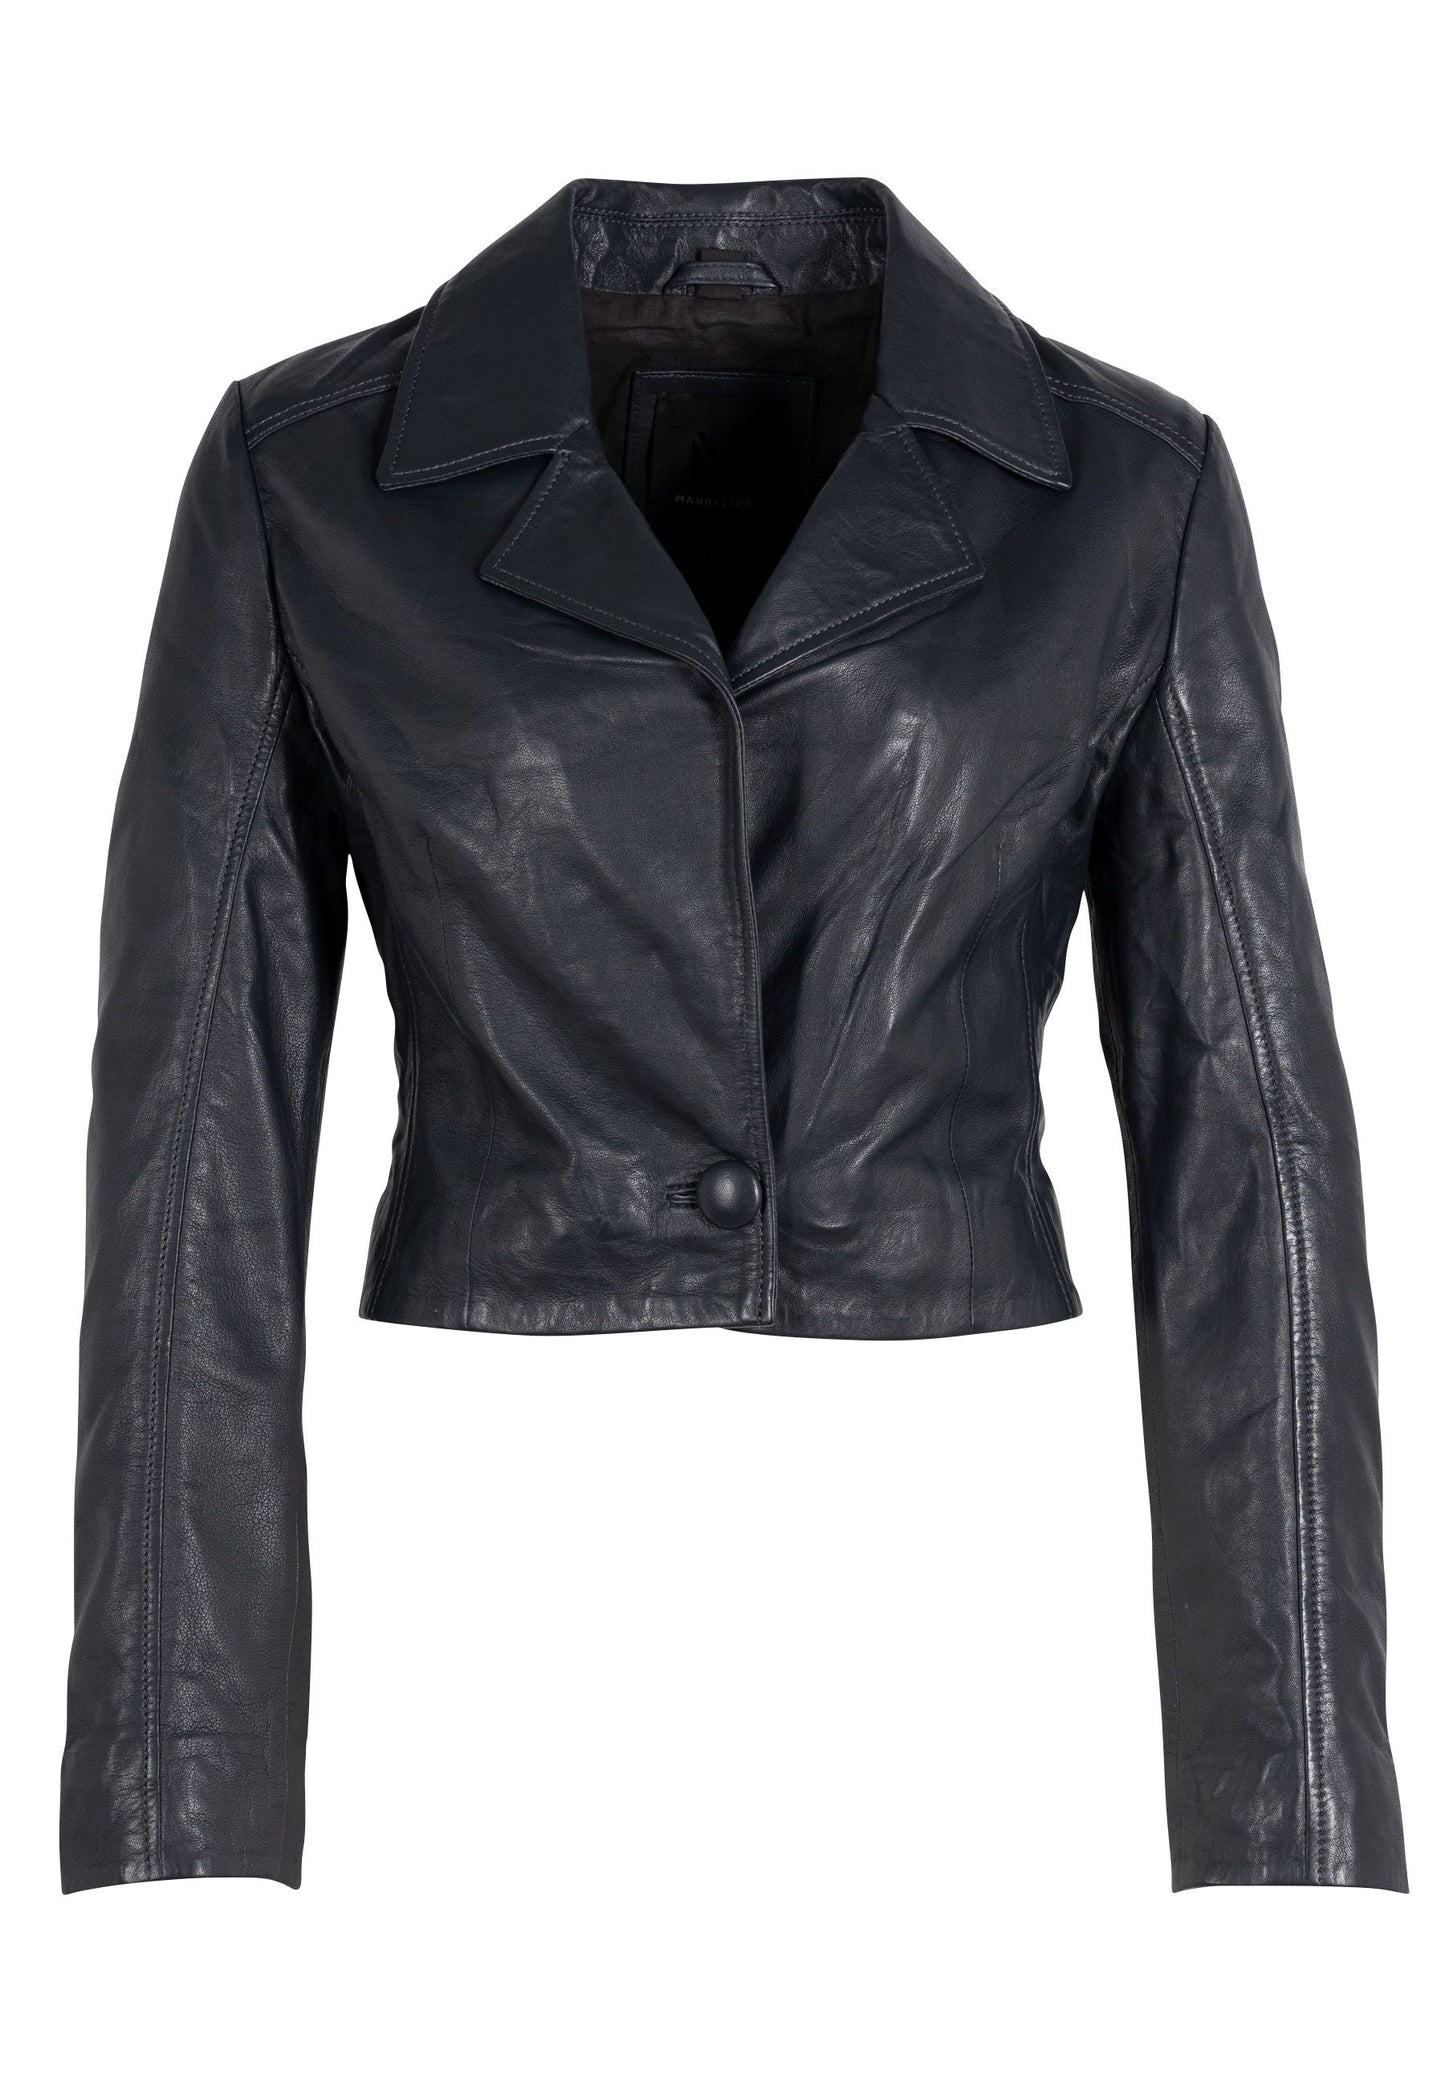 Acita RF Leather Jacket, Black